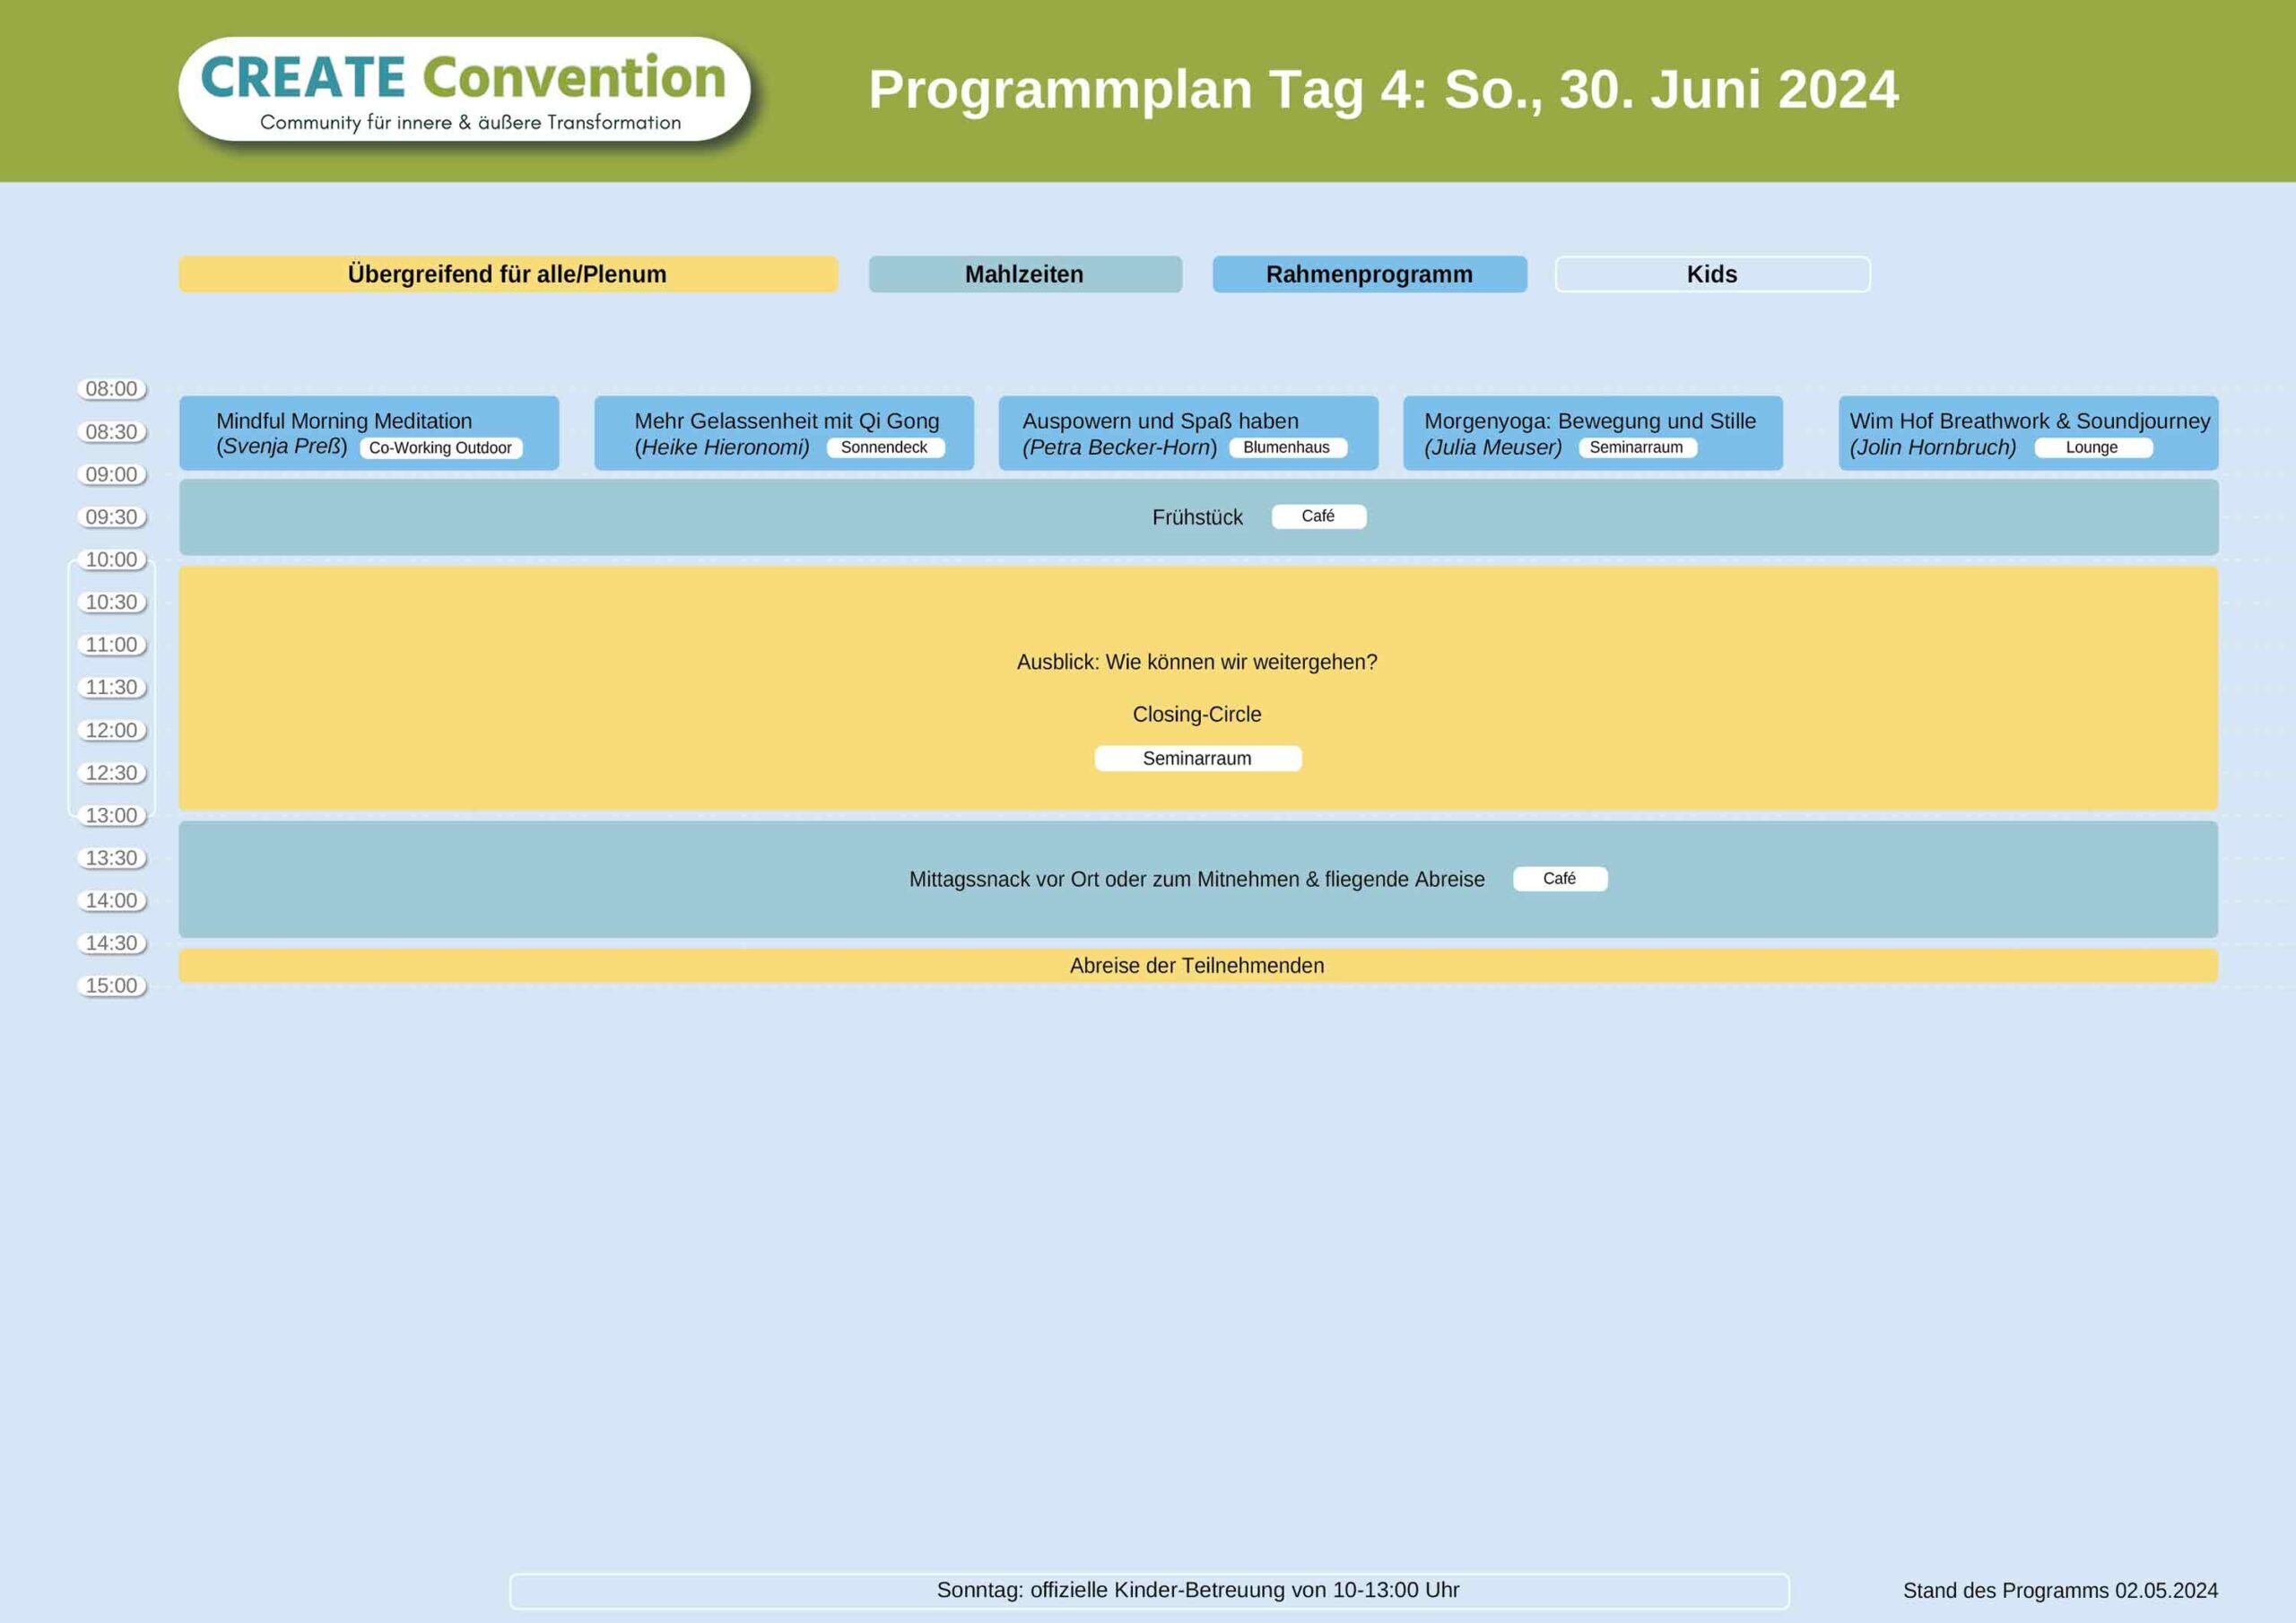 CREATE Convention 2024 Prorgamm Tag 4